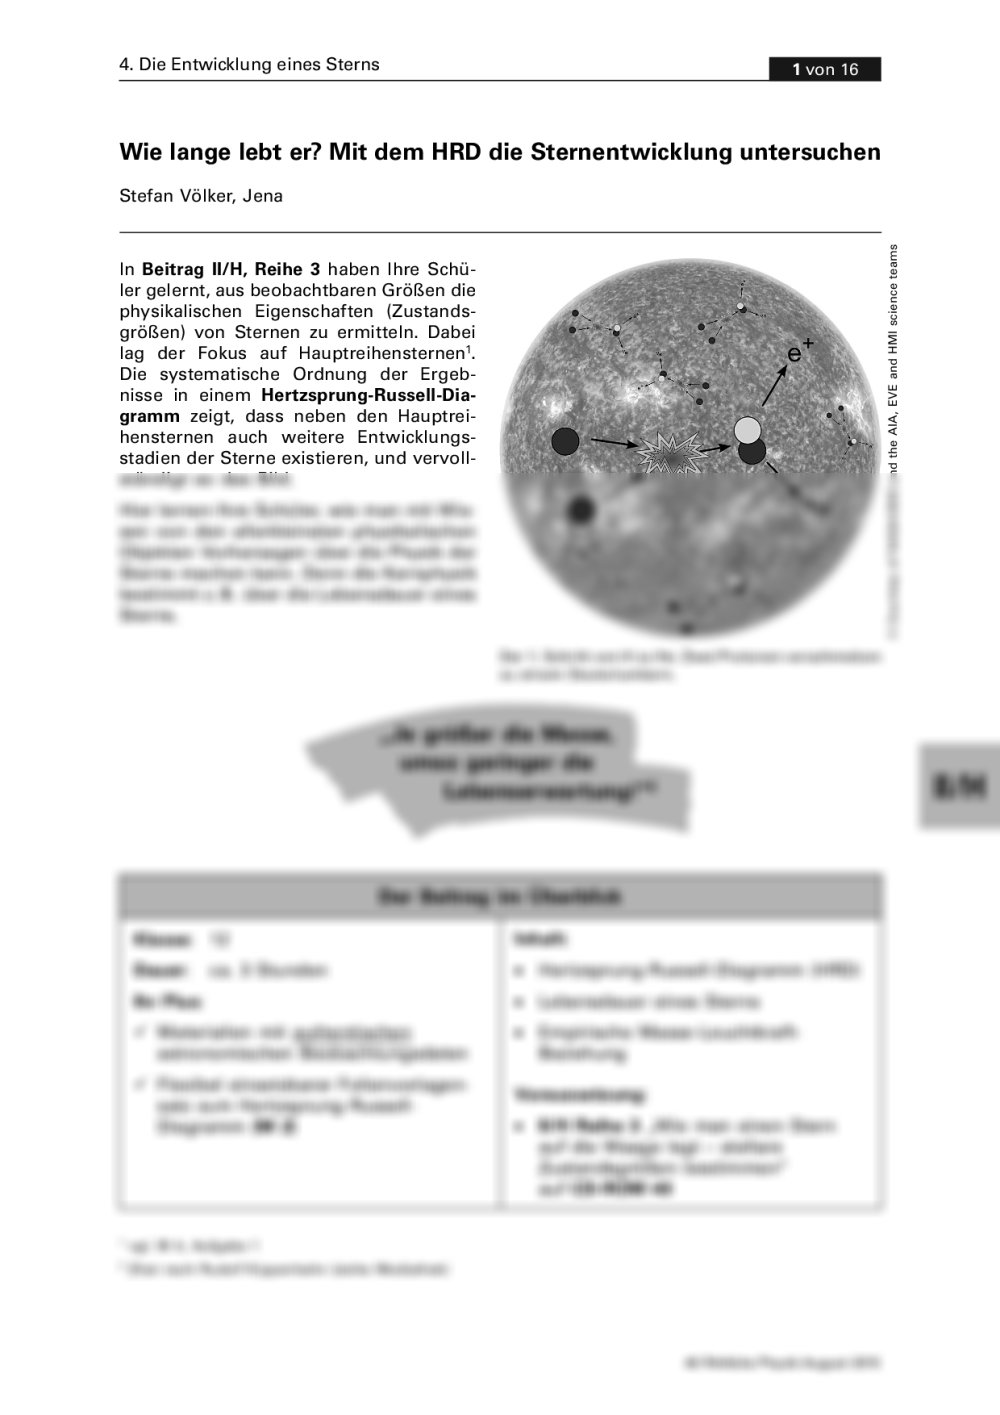 Mit dem HRD die Sternentwicklung untersuchen - Seite 1